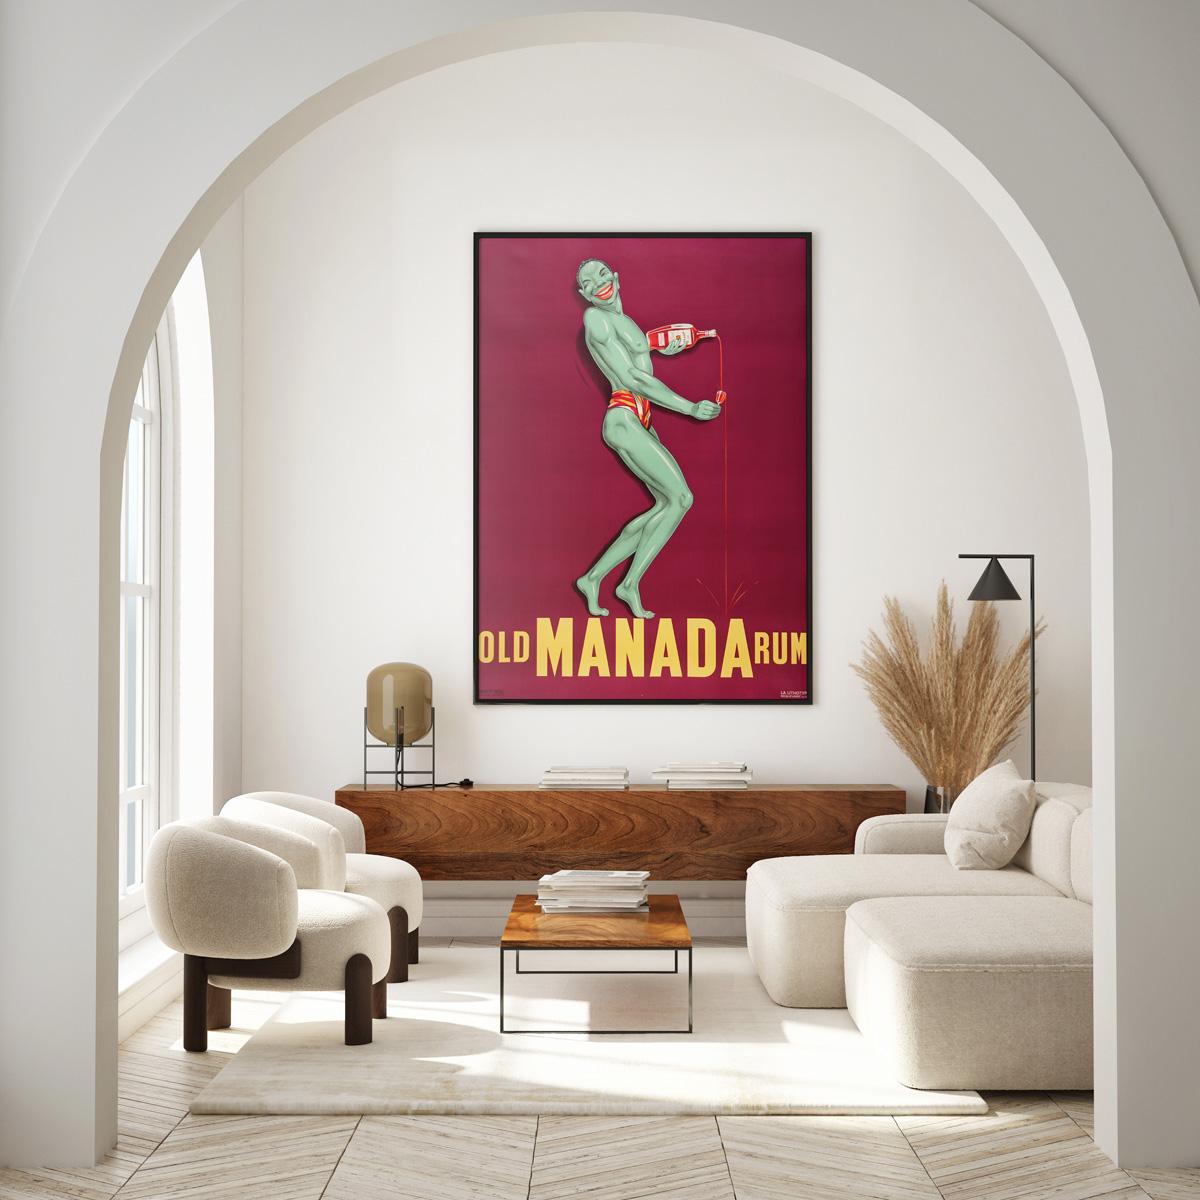 Fabuleuse affiche publicitaire française vintage pour le rhum vieux Manada. Cette affiche française des années 1930 présente une image étonnante de ce joyeux bonhomme vert qui flotte presque sur un fond violet contrasté. Il sourit en tenant une